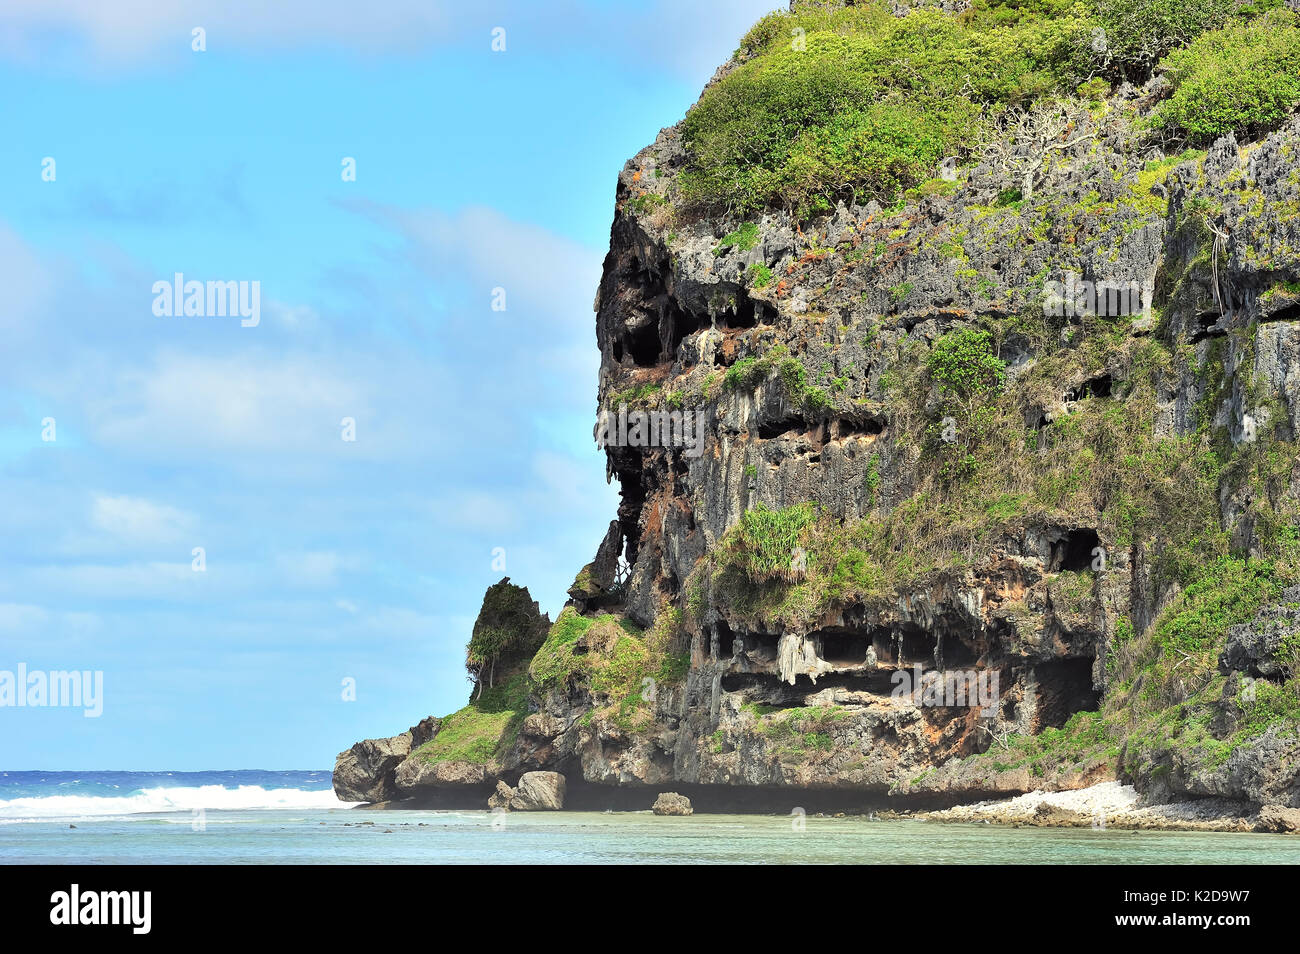 Toarutu scogliera sulla costa est dell'isola Rurutu, Australs arcipelago, Polinesia Francese Foto Stock